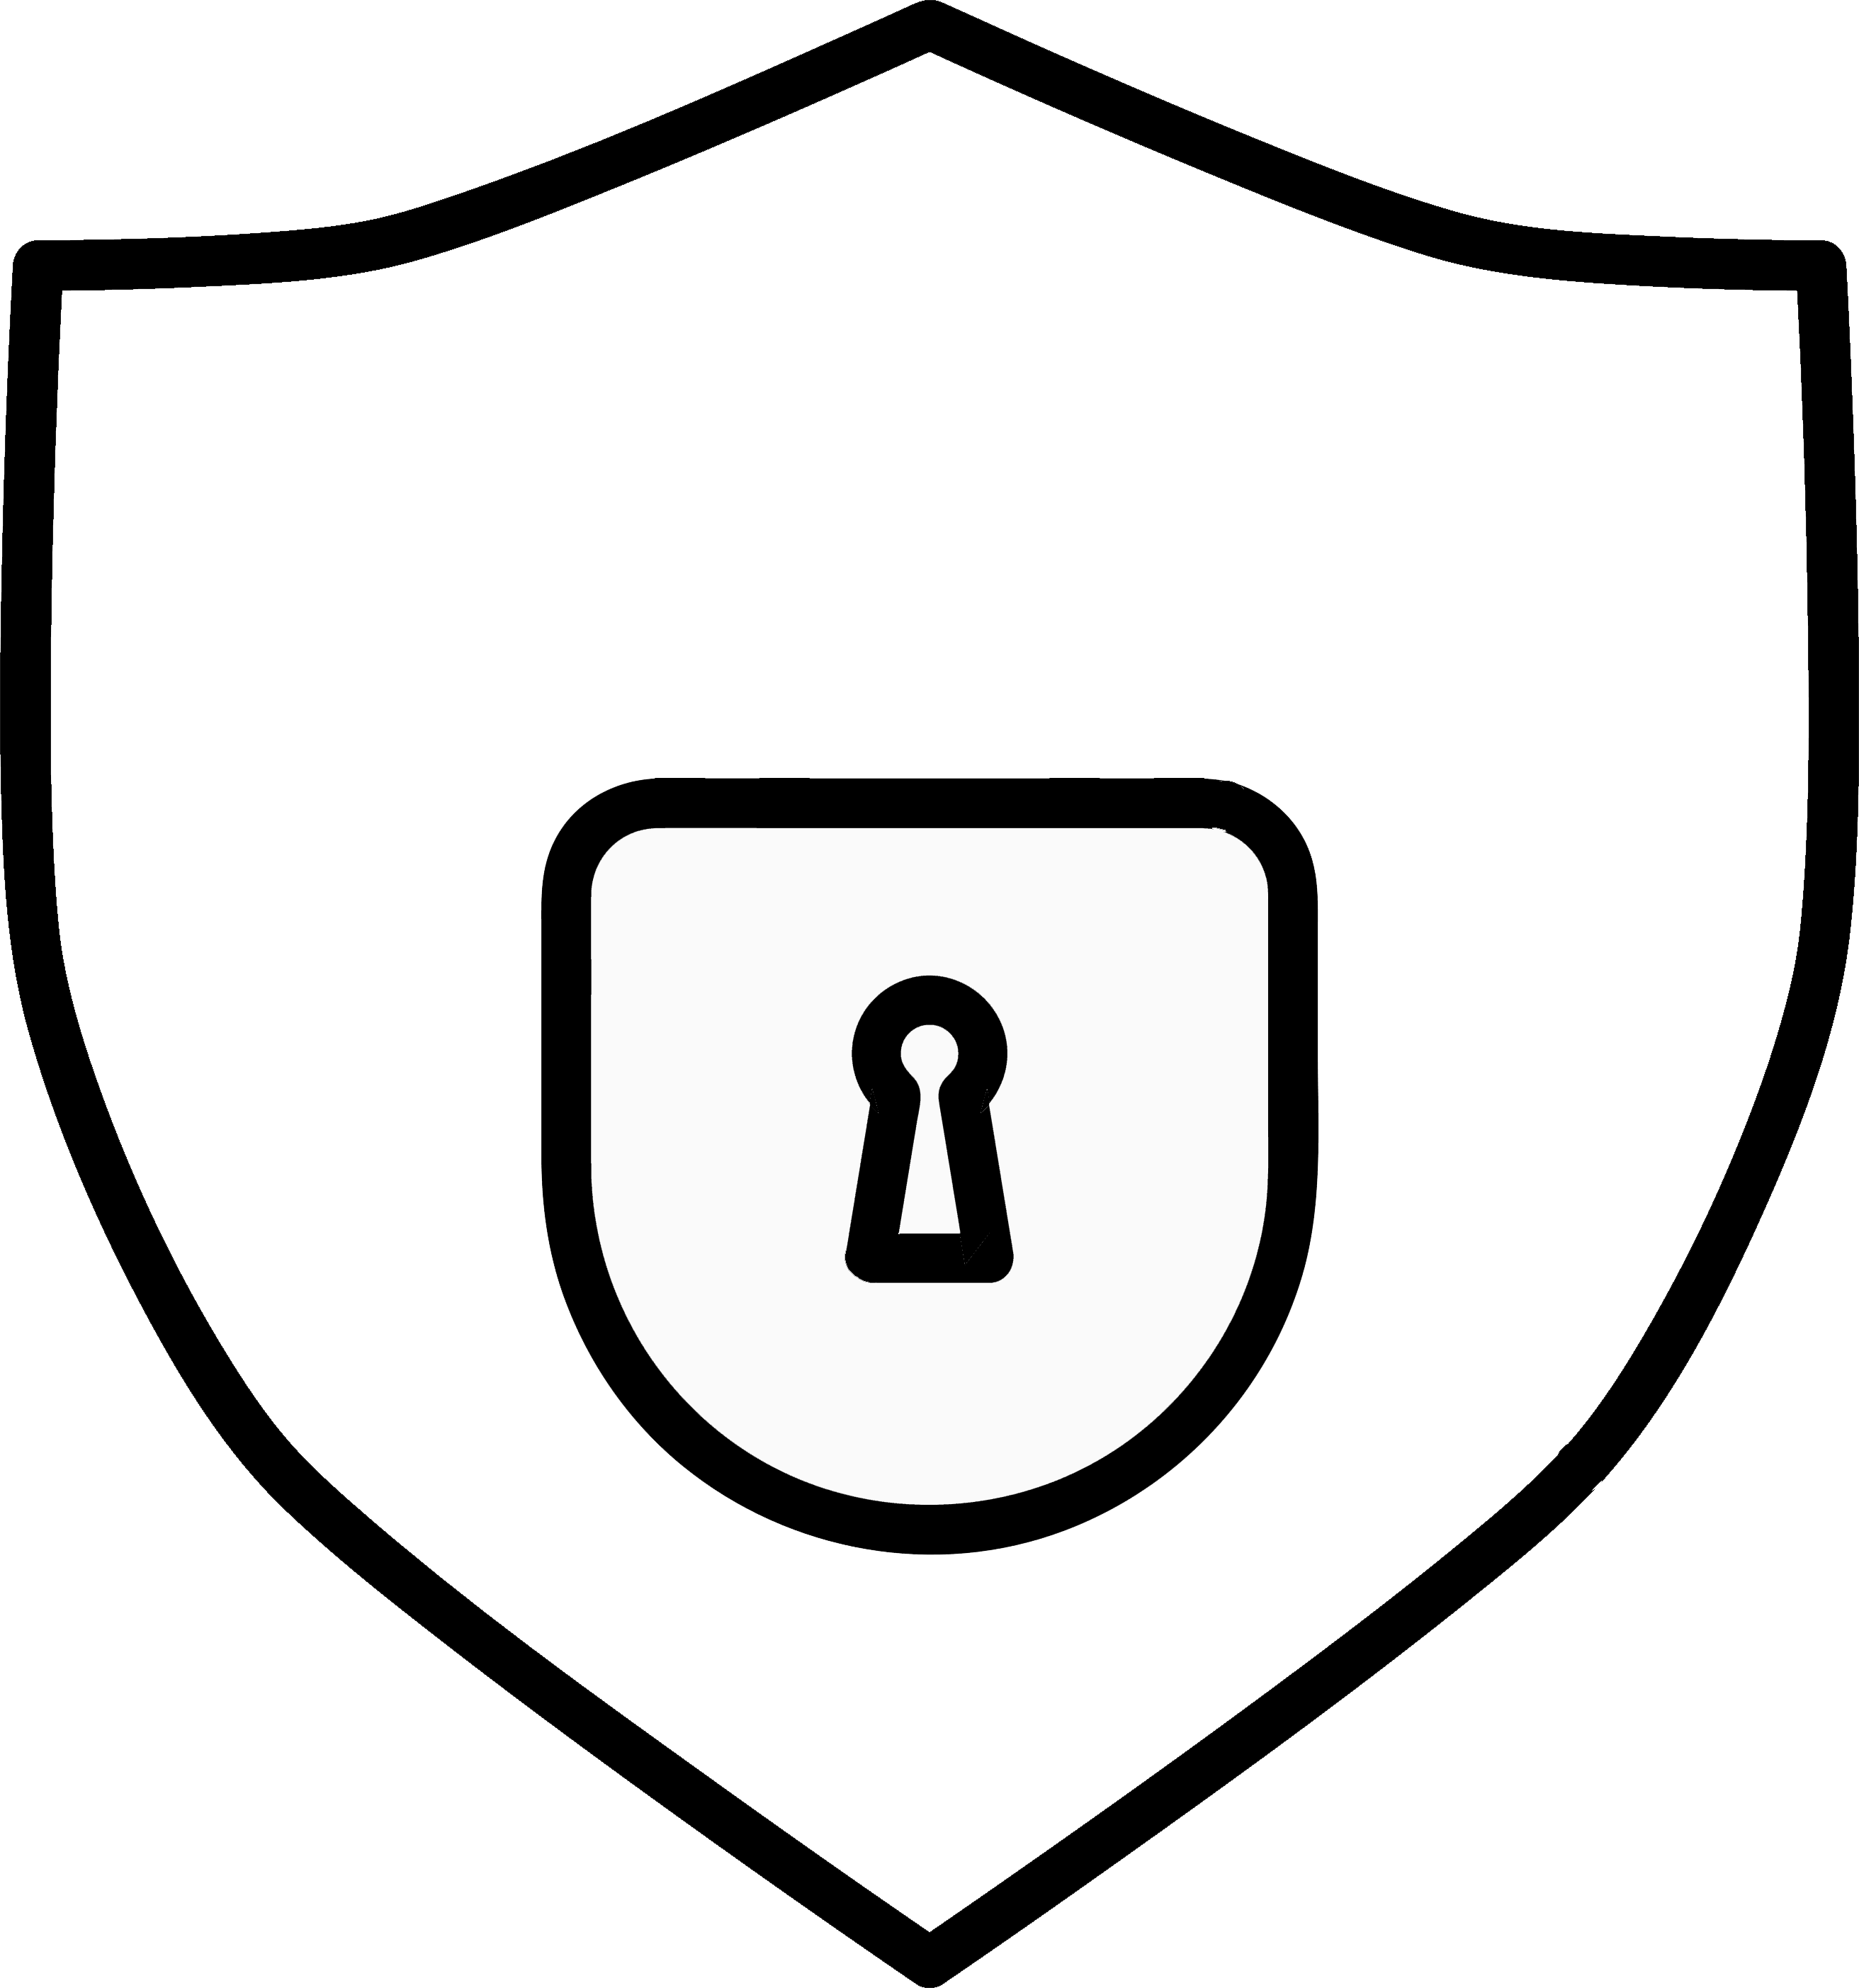 Representación gráfica de un escudo con candado como ilustración de protección y seguridad.